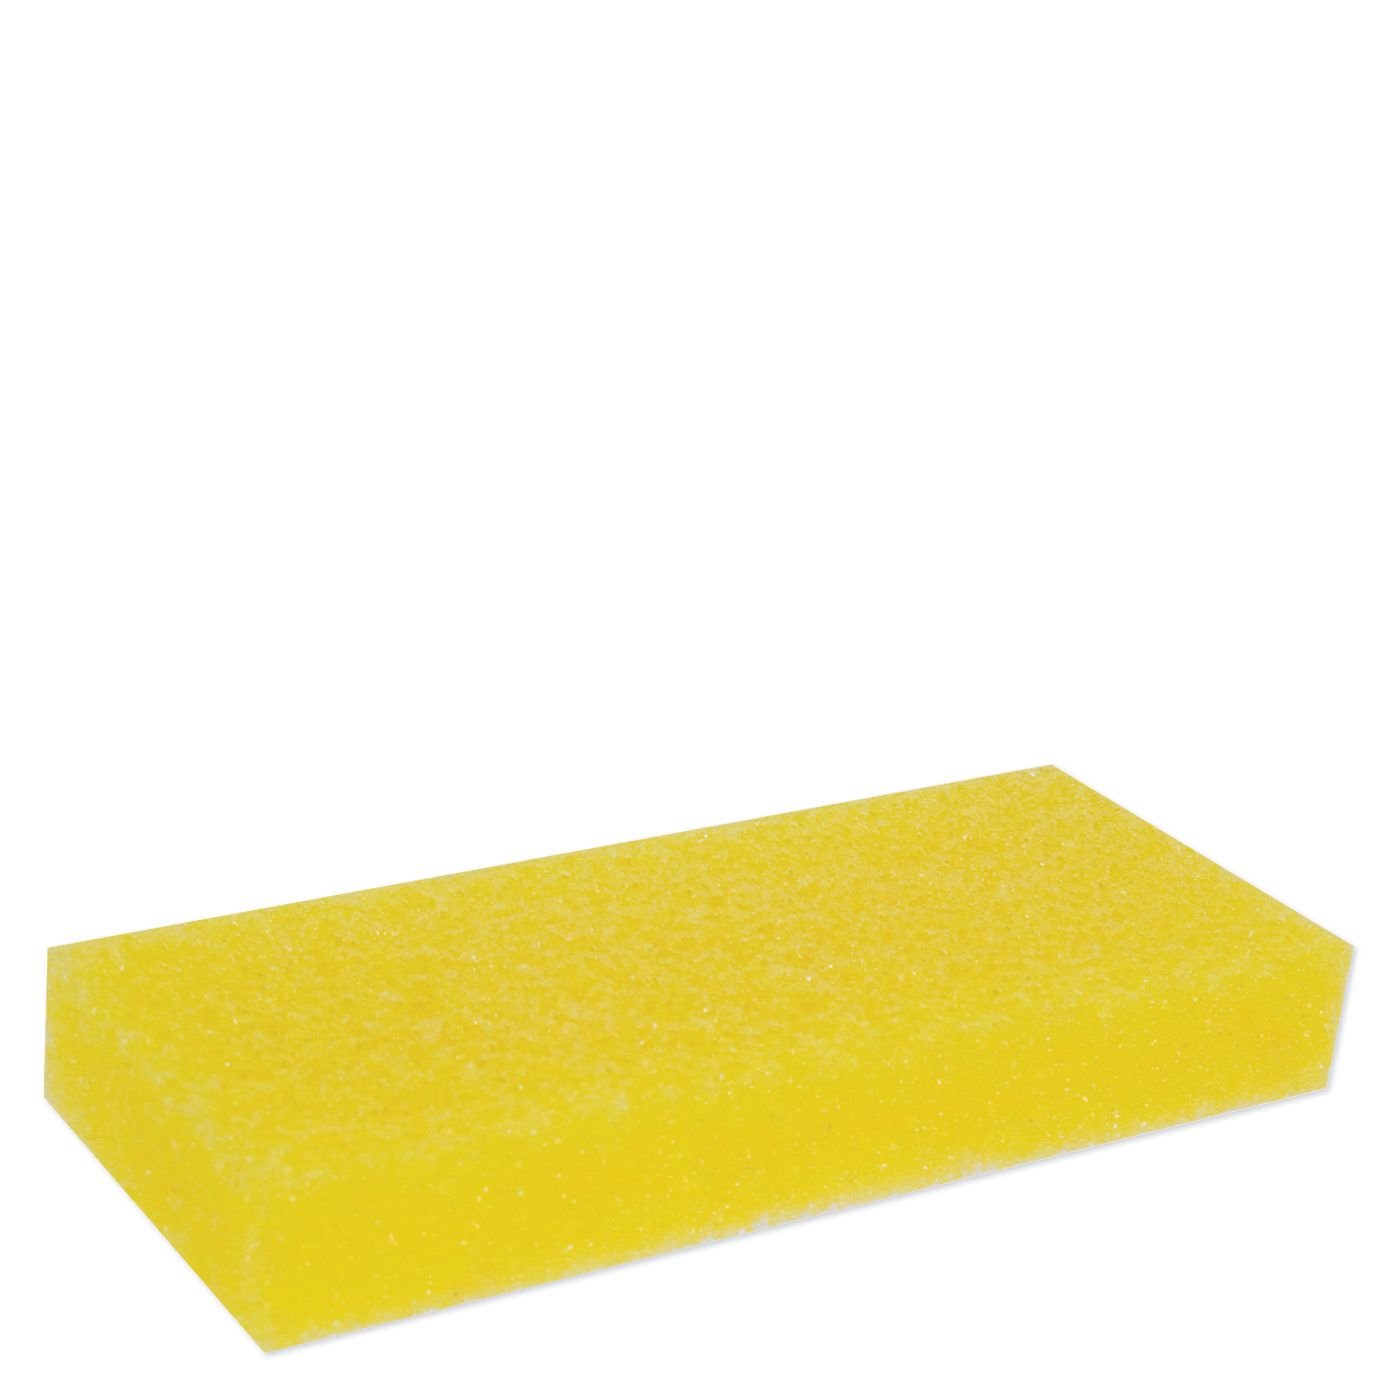 Pumice Sponges - pack of 12